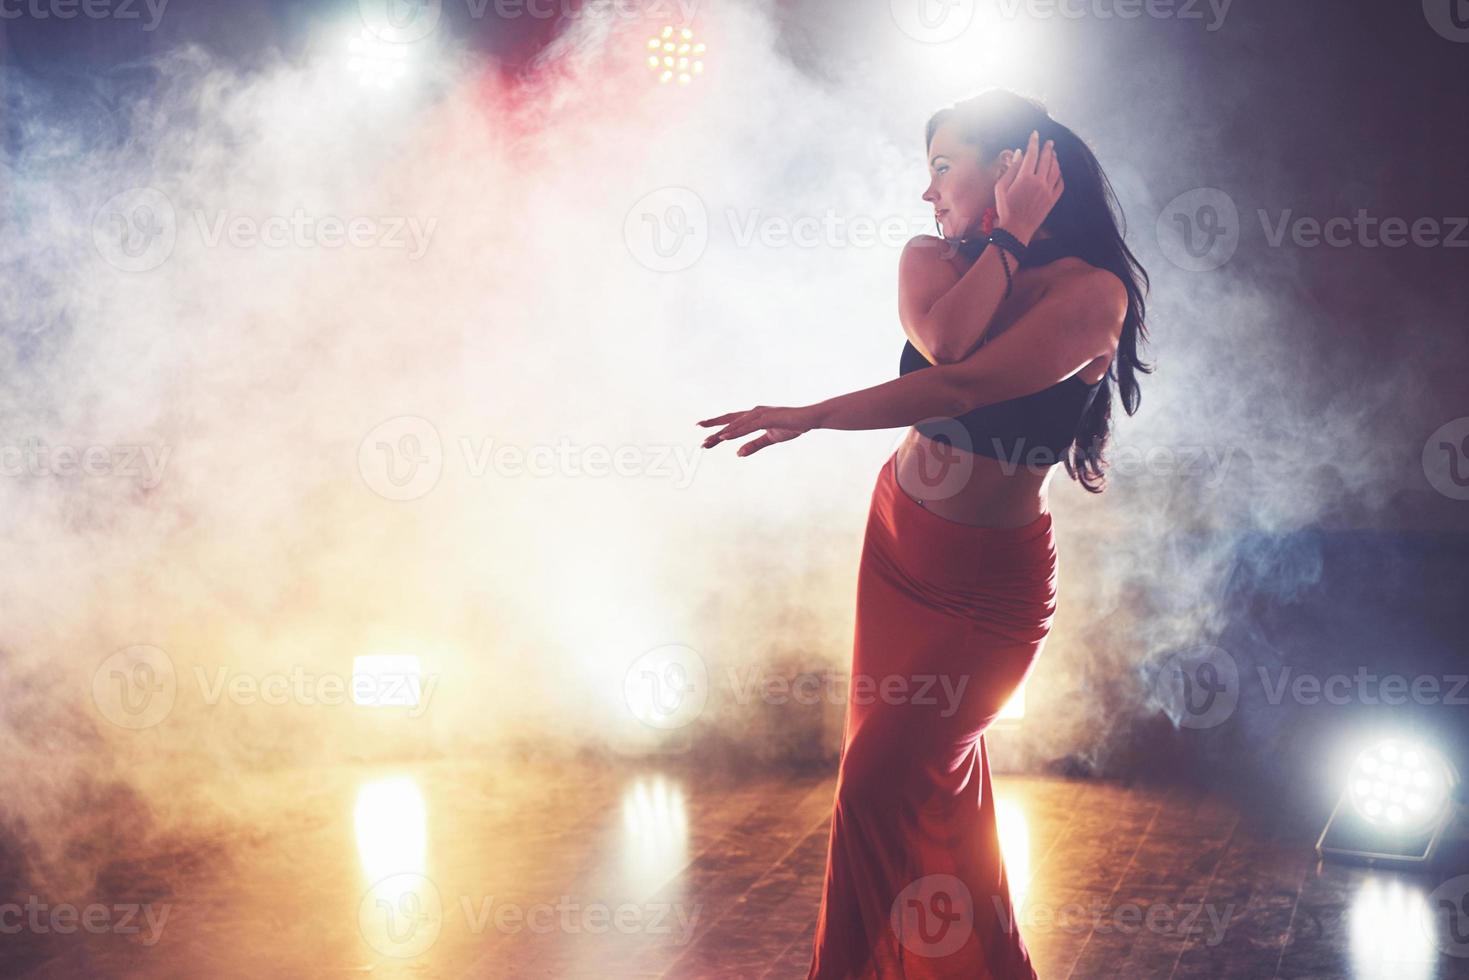 Geschicktes und schönes Tänzermädchen, das im dunklen Raum unter Konzertlicht und Rauch auftritt und einen künstlerischen und emotionalen zeitgenössischen Tanz aufführt foto